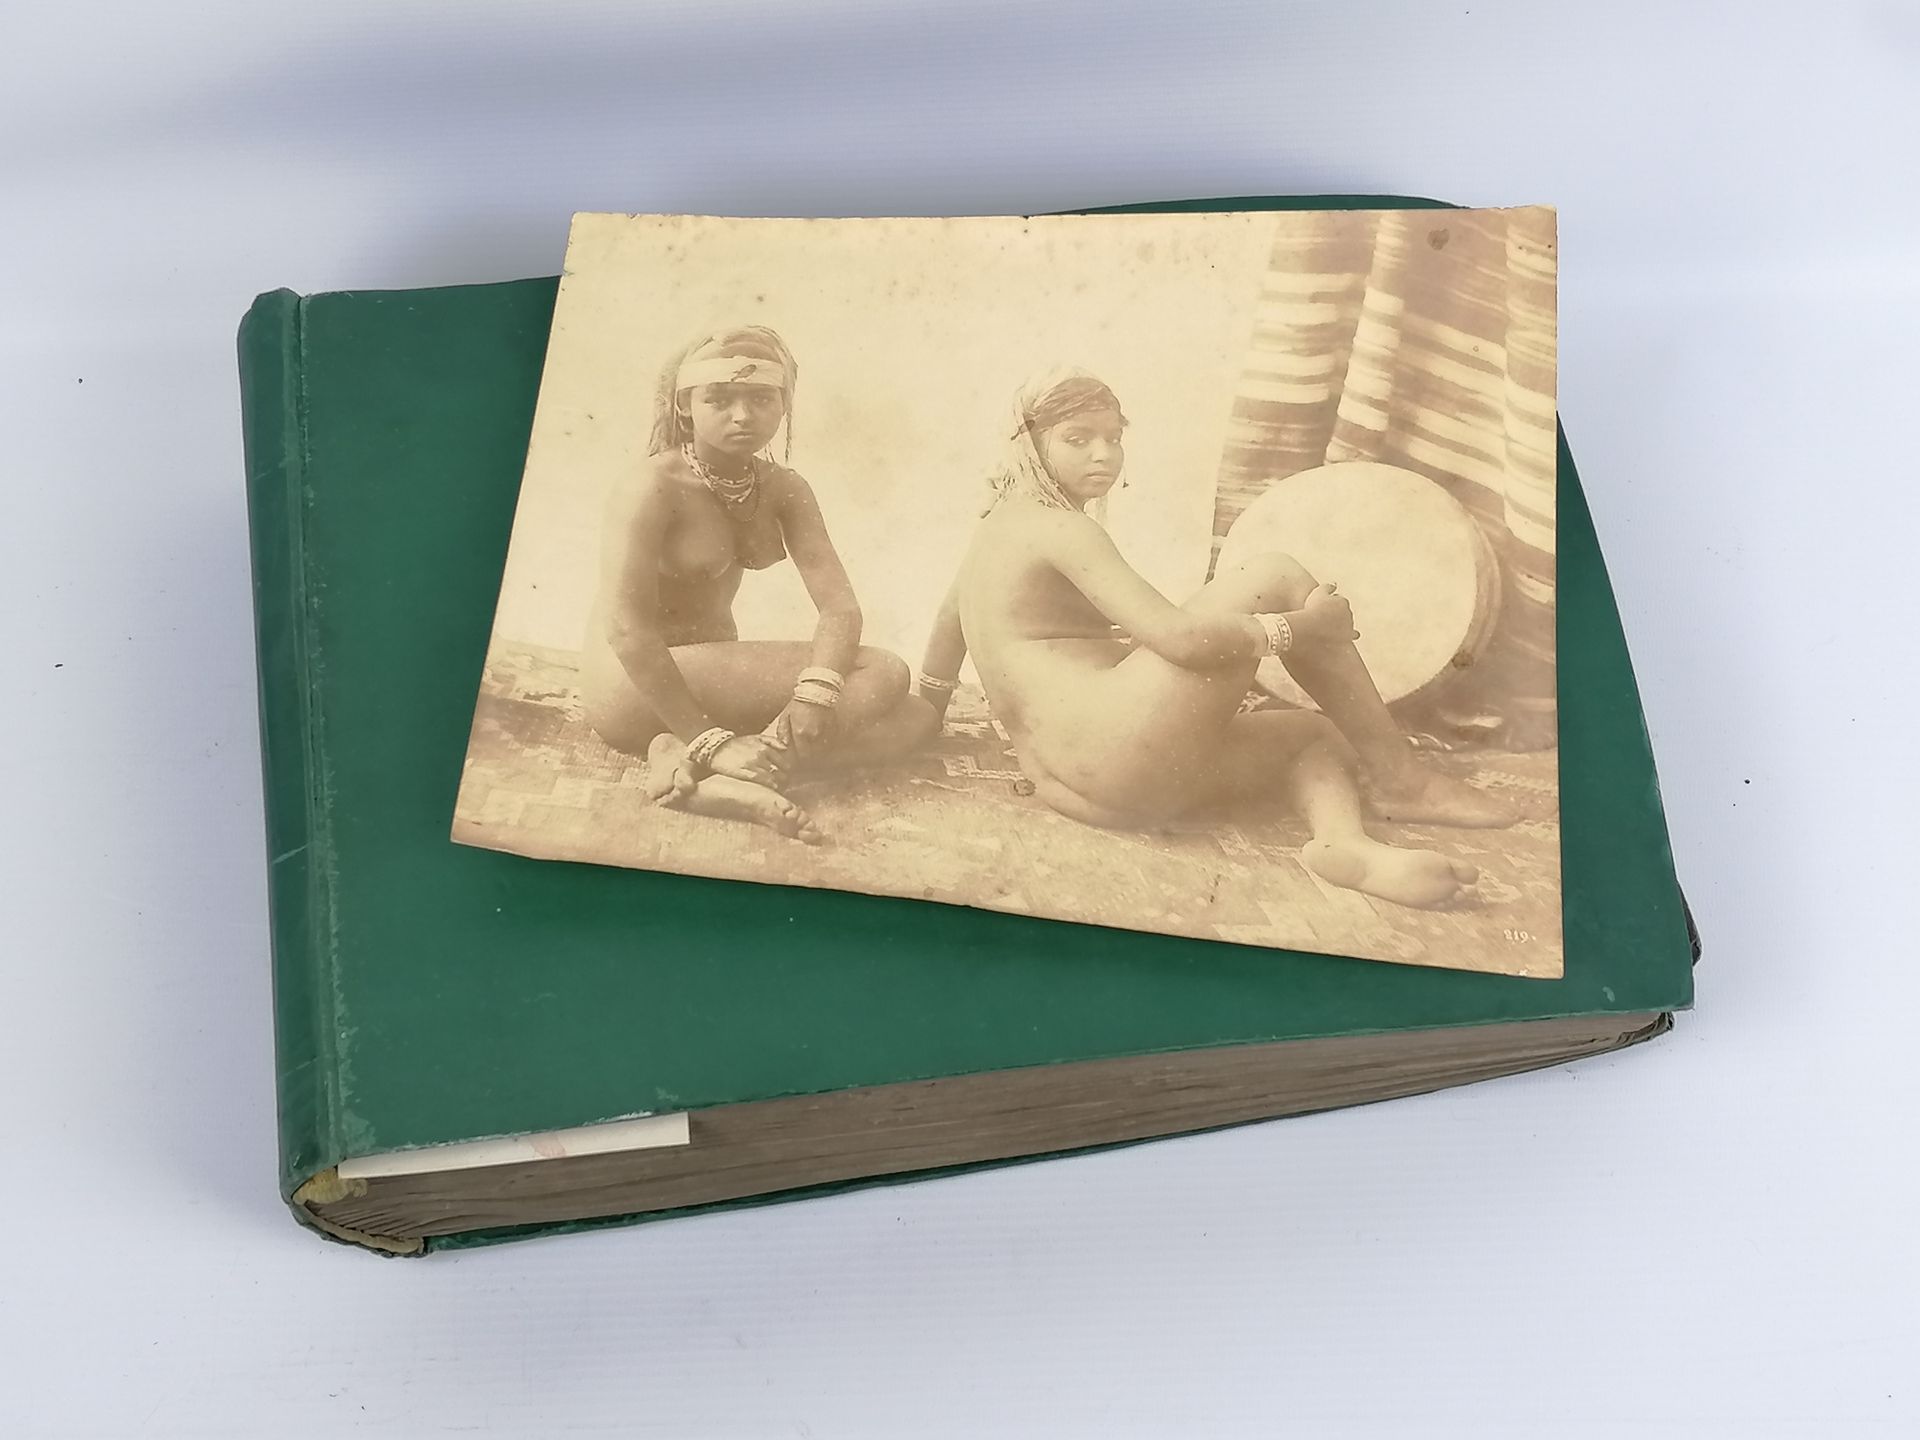 Null 19世纪和20世纪的重要绿色皮革相册，包括......色情和女性代表：
- 一套东方主题的黑白情色照片
- 一组美好时代的裸体照片
- 一套彩色色情明&hellip;